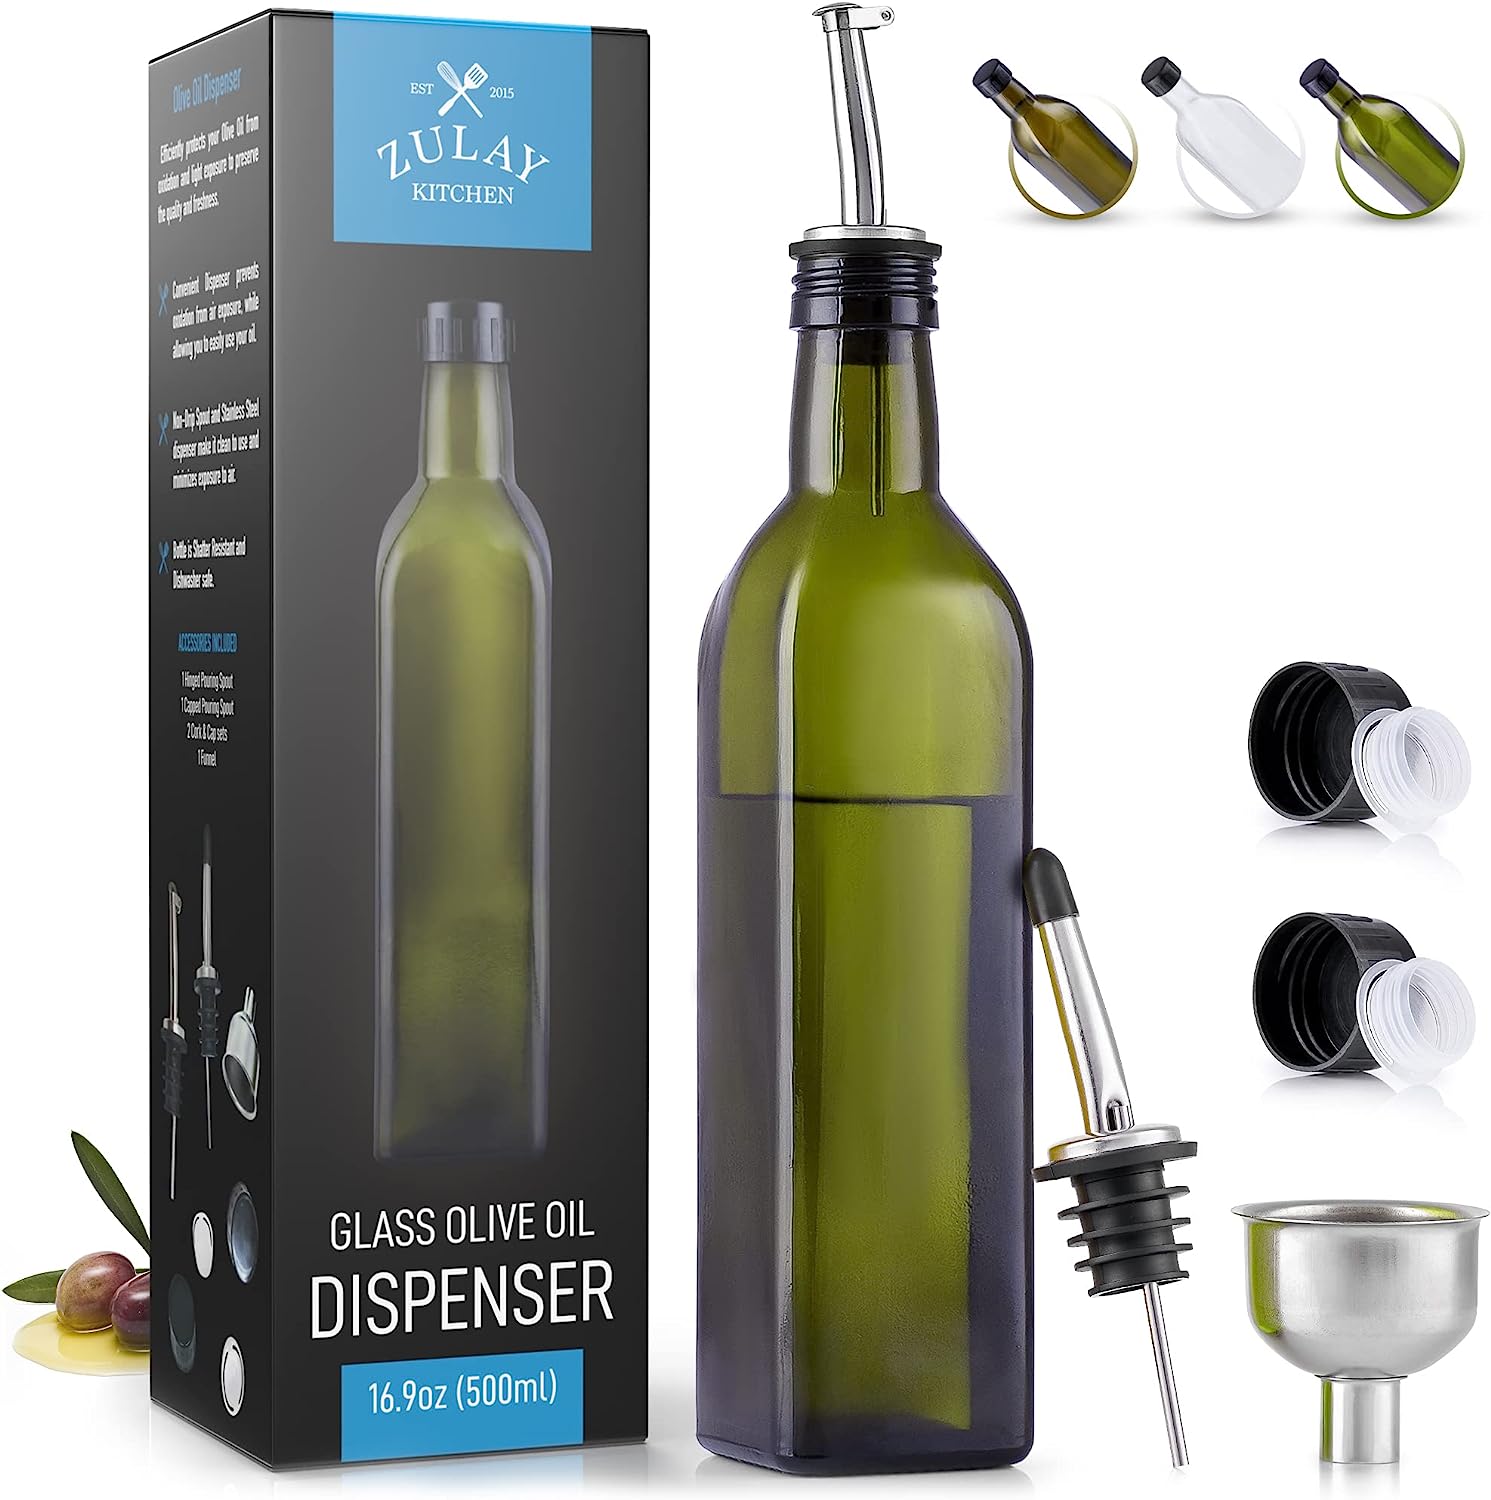 Zulay (17oz) Olive Oil Dispenser Bottle For Kitchen - [...]